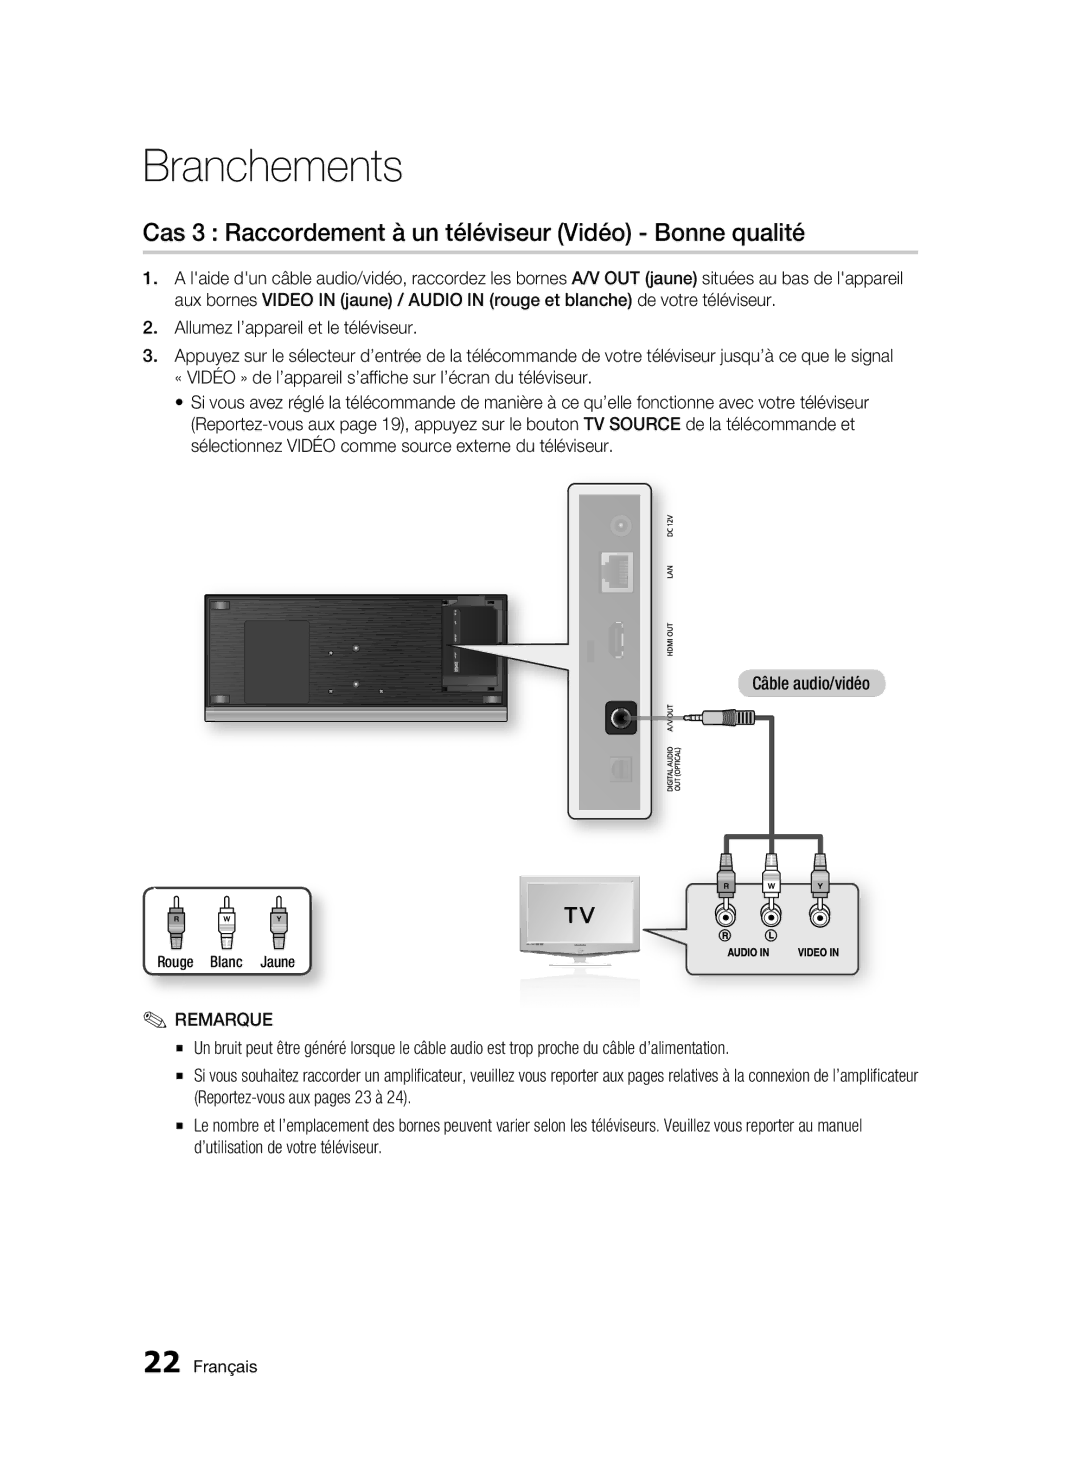 Samsung BD-C7500/XEF, BD-C7500/EDC manual Cas 3 Raccordement à un téléviseur Vidéo Bonne qualité, Rouge Blanc Jaune 